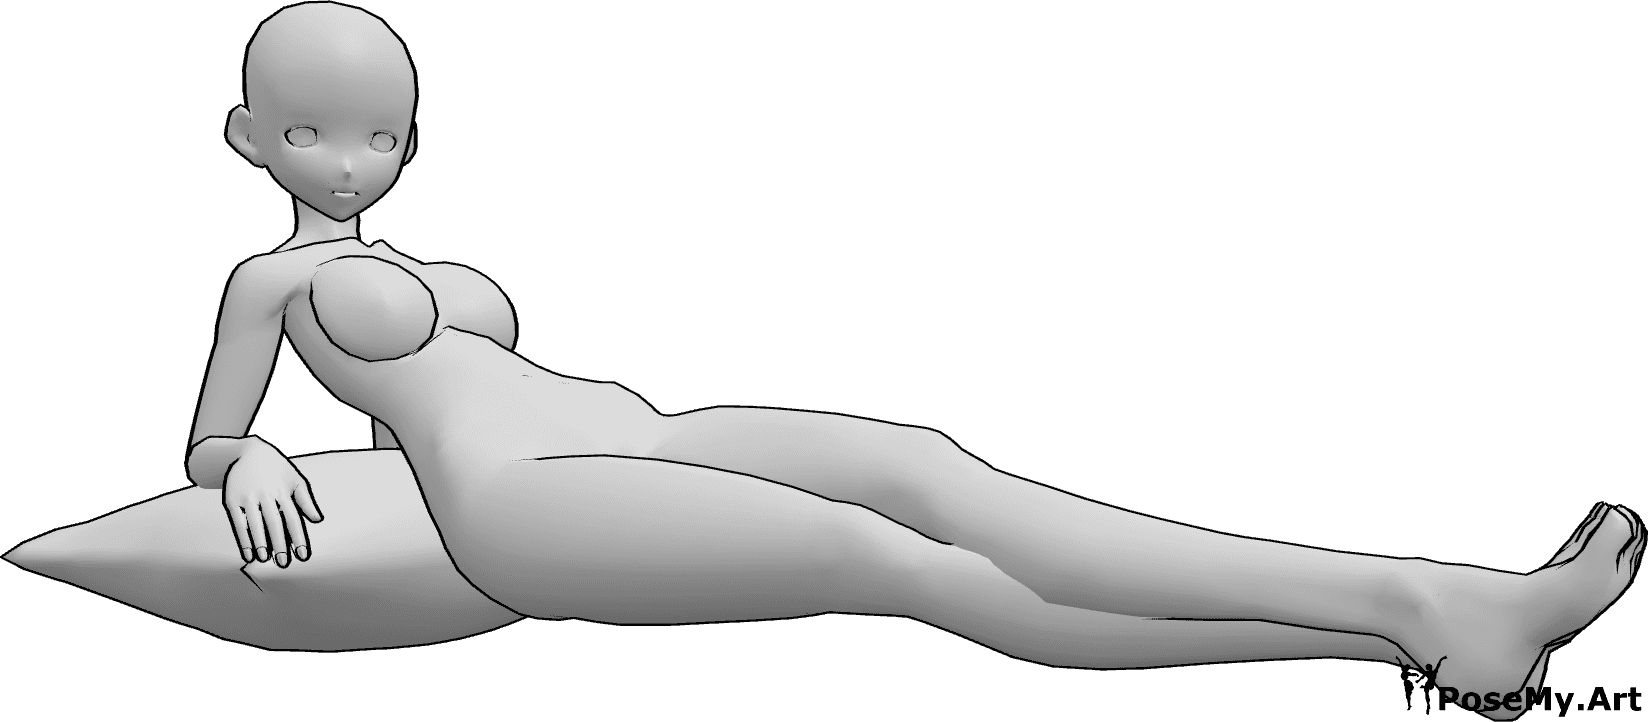 Referência de poses- Pose deitada de mulher anime - A mulher anime está deitada e olha para a direita, apoiada numa almofada